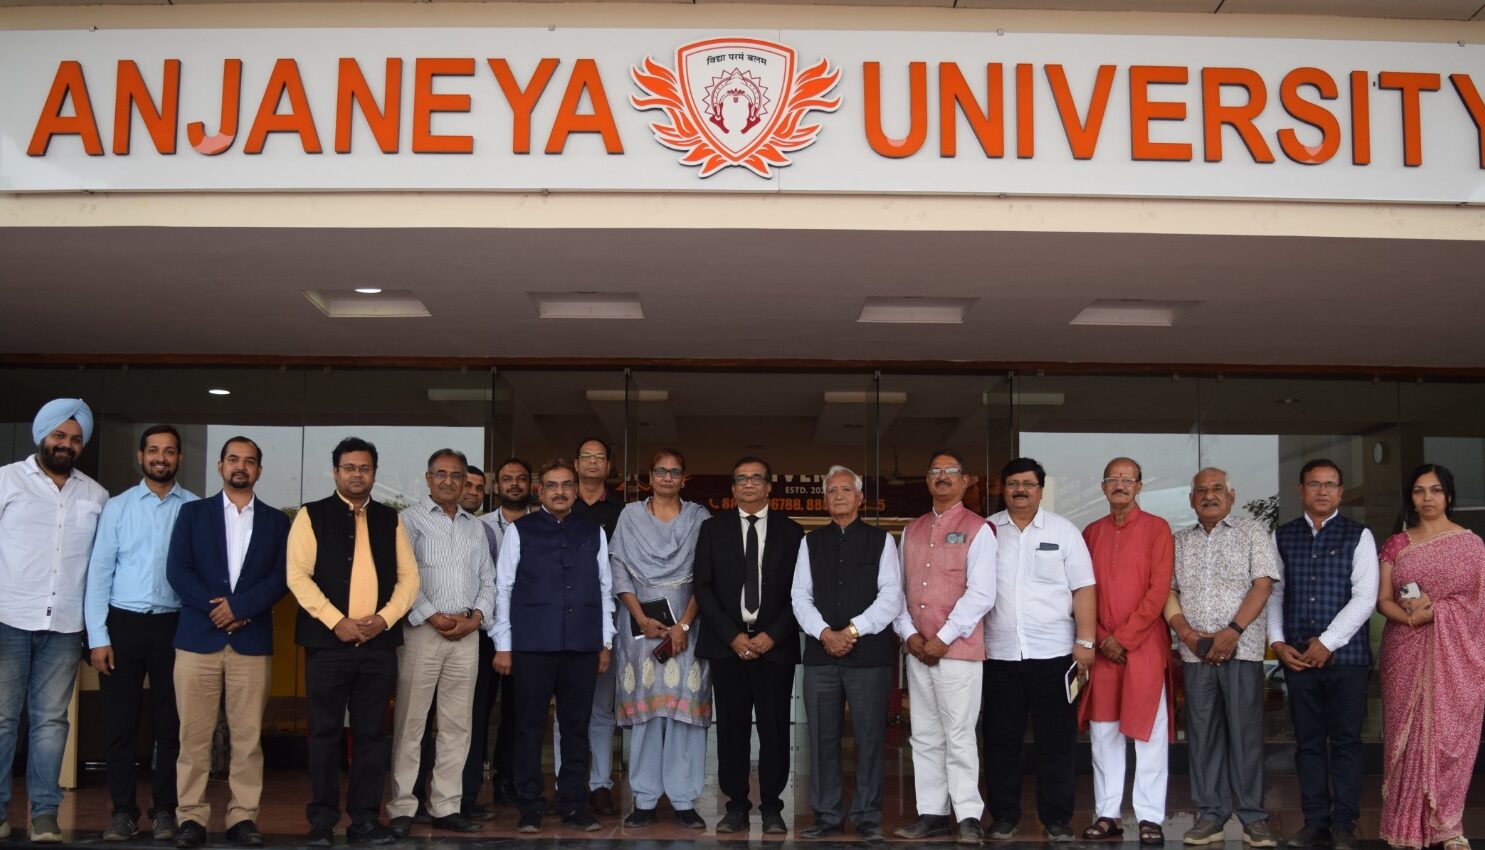 RAIPUR NEWS : आंजनेय विश्वविद्यालय में संकल्प दिवस का आयोजन